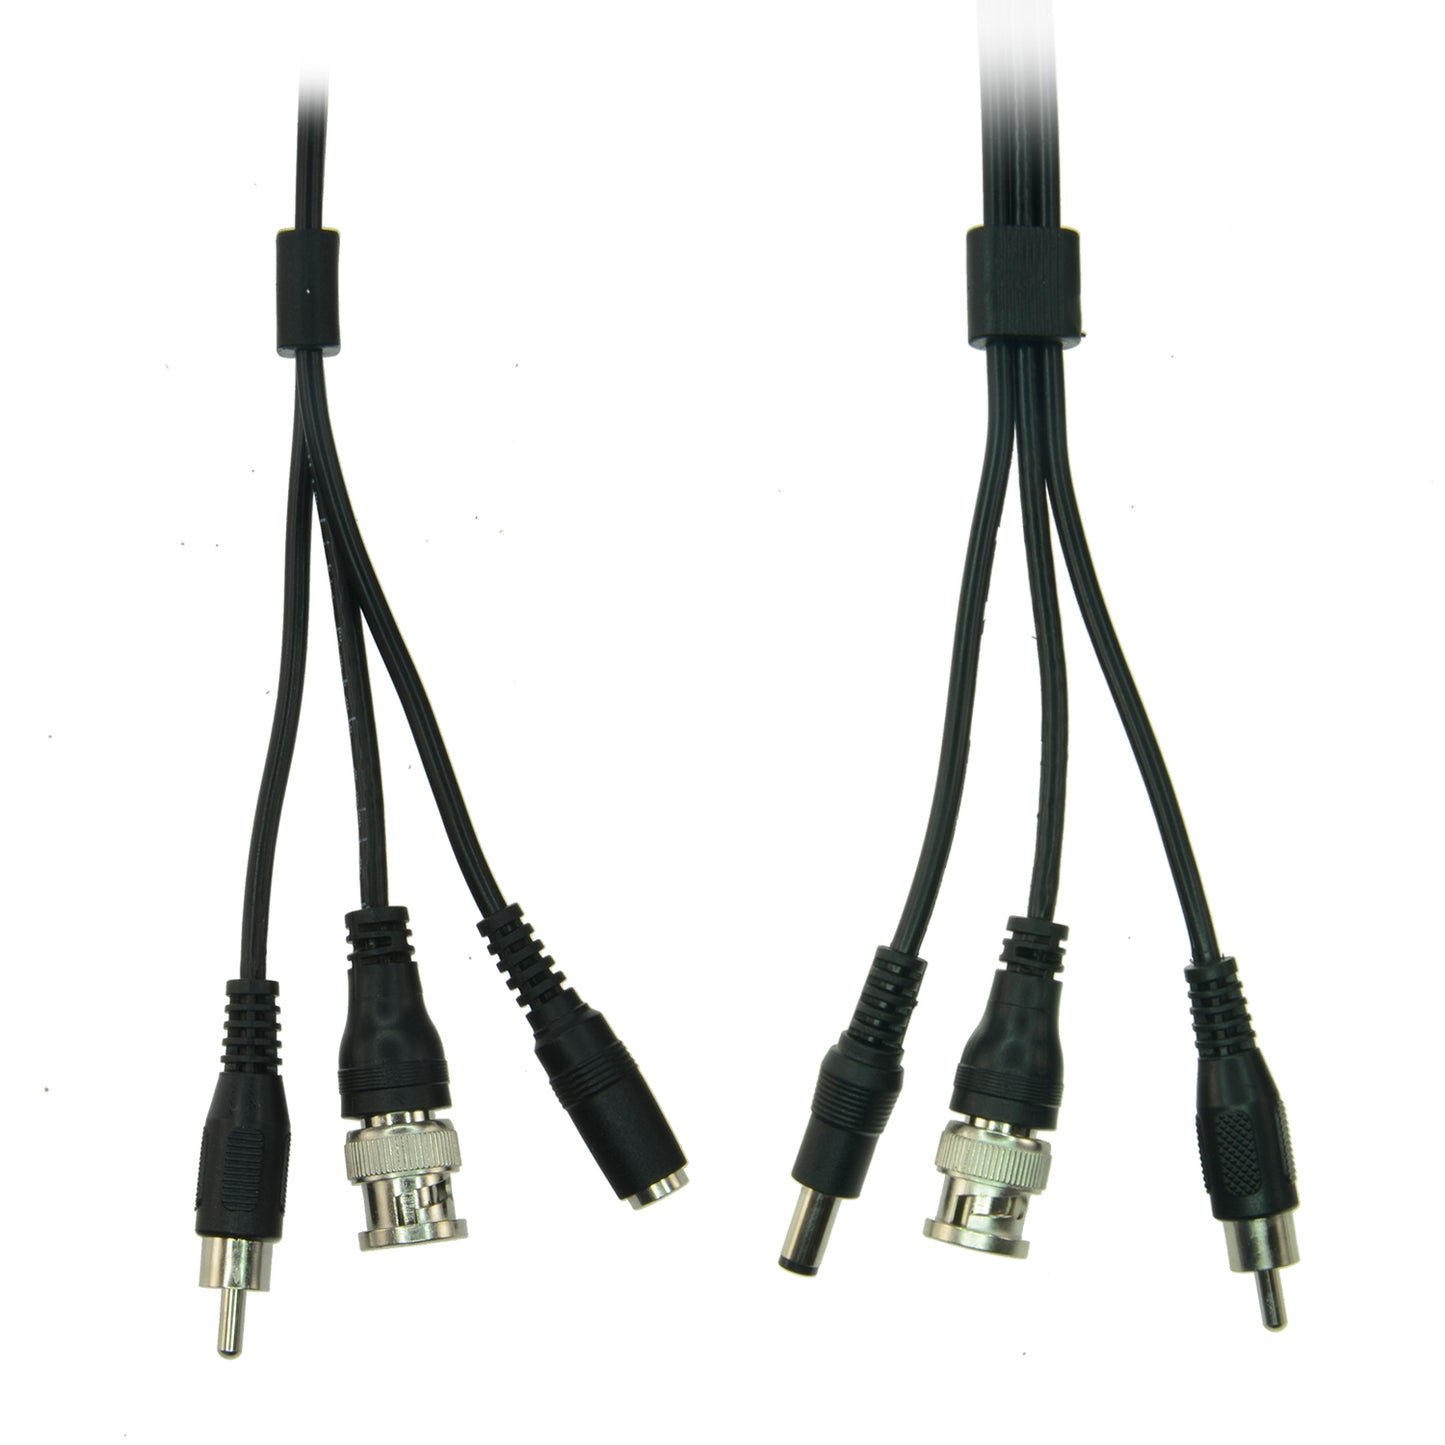 Cable combinado RG59 + Audio + DC - Mini RG59 con conector BNC - Cable de audio vía RCA - Cable de alimentación vía Jack - Longitud 20 m - Bajas pérdidas